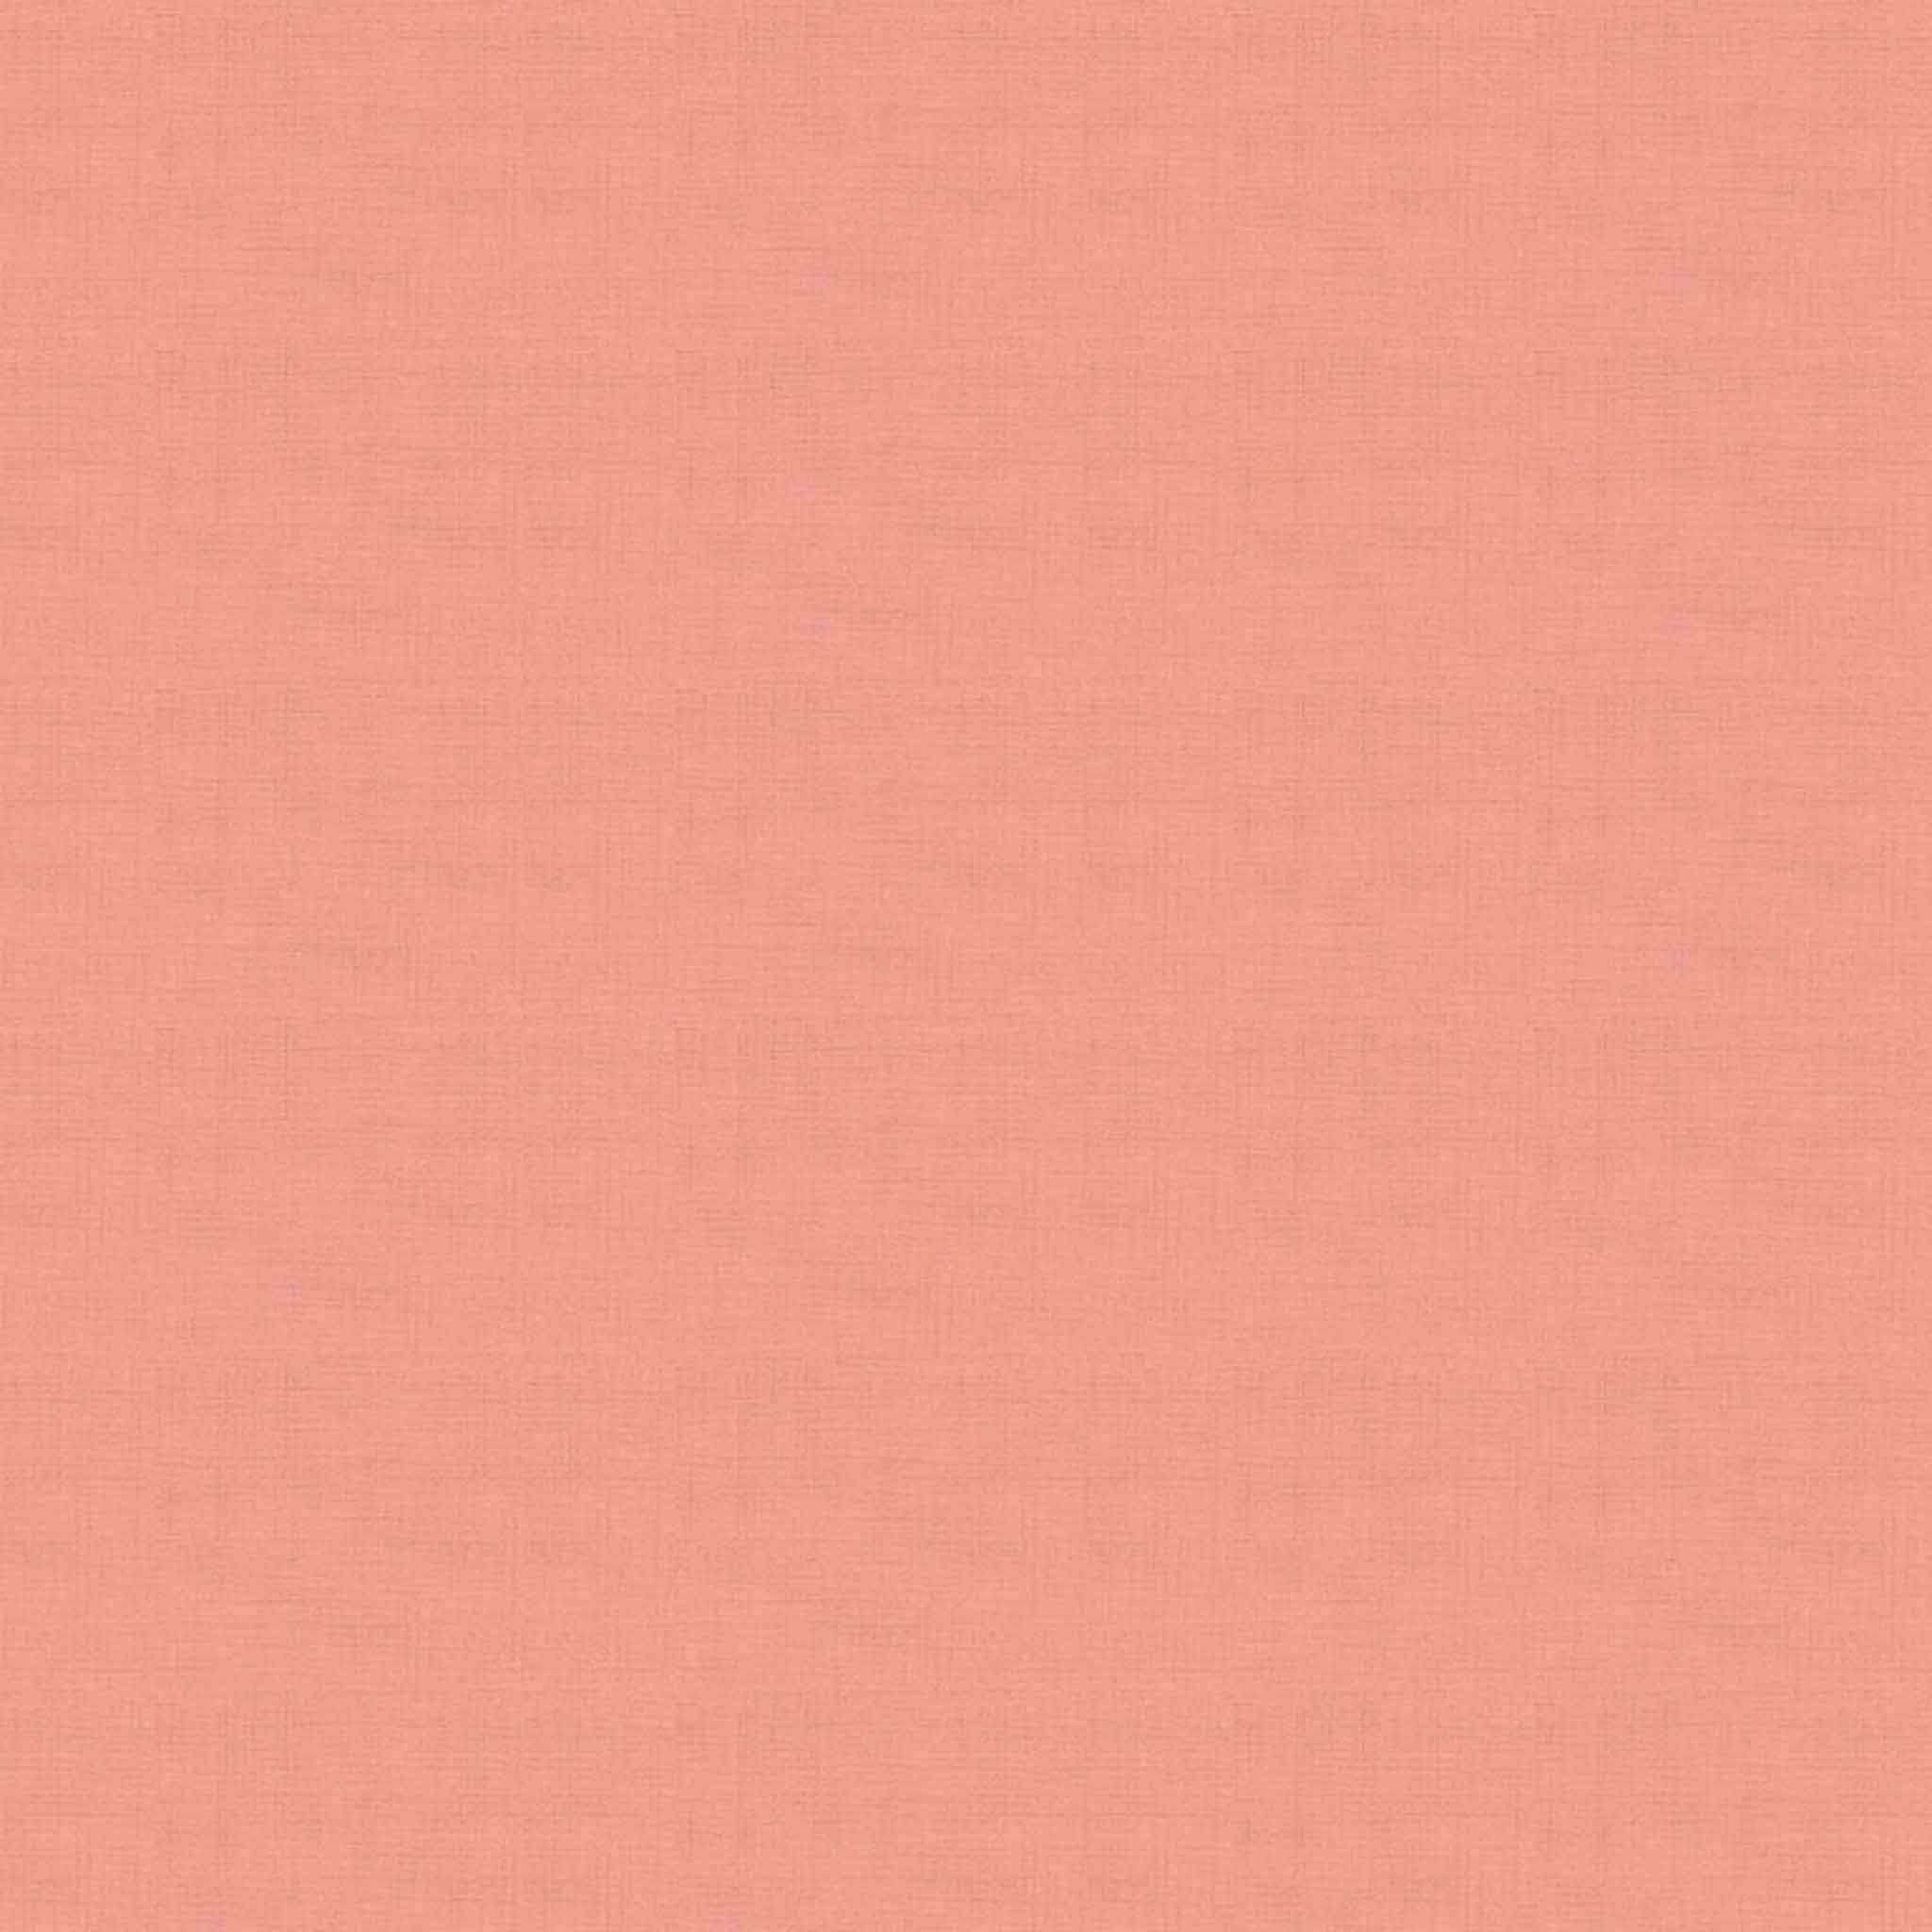 Linen Texture - Blossom - Pink Cotton Fabric - Makower 1473/P23